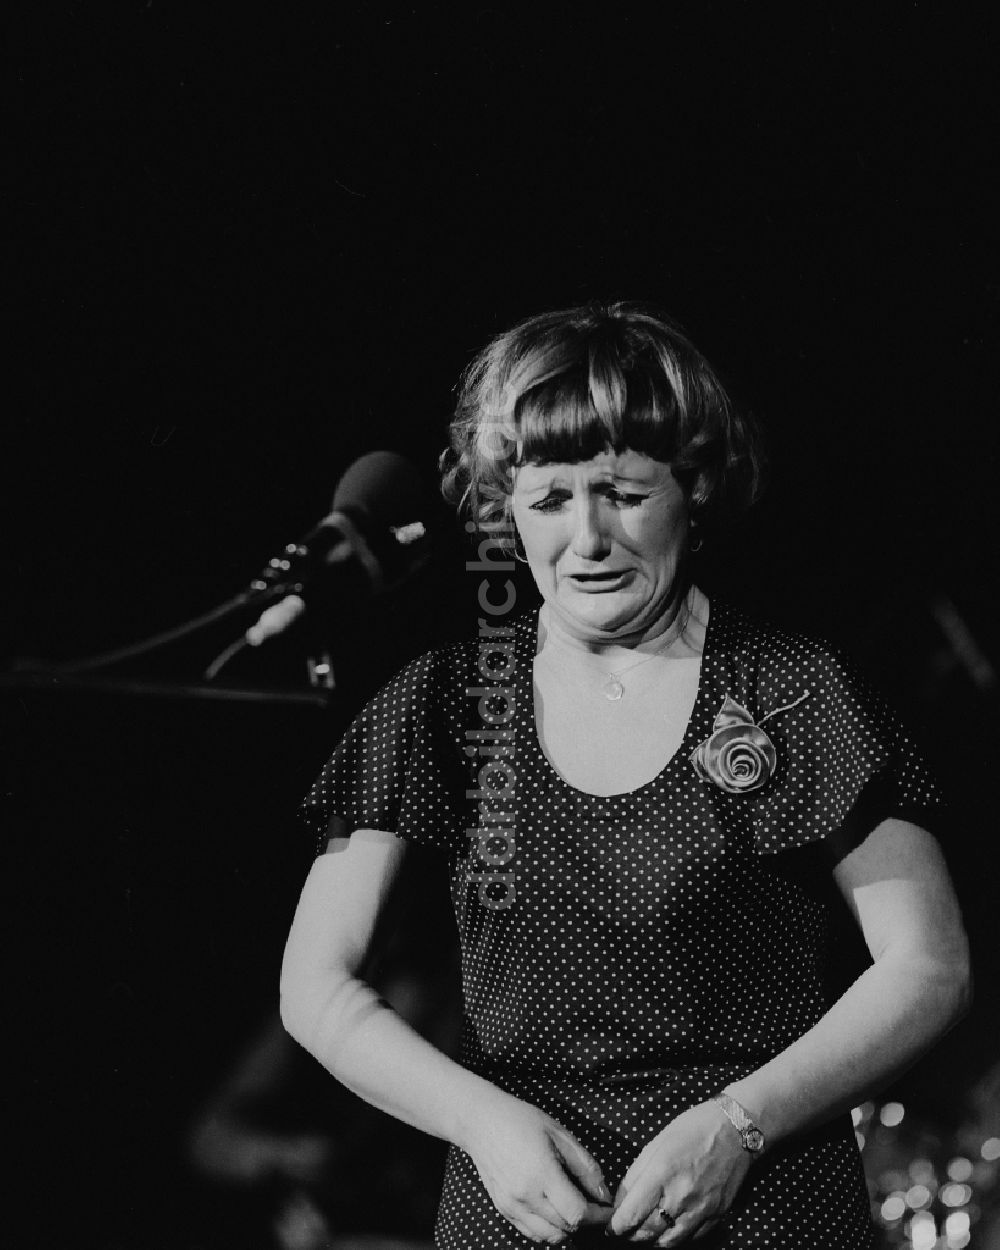 DDR-Fotoarchiv: Chemnitz - Die Entertainerin, Kabarettistin, Sängerin und Schauspielerin Helga Hahnemann (1937 - 1991) in Chemnitz im heutigen Bundesland Sachsen